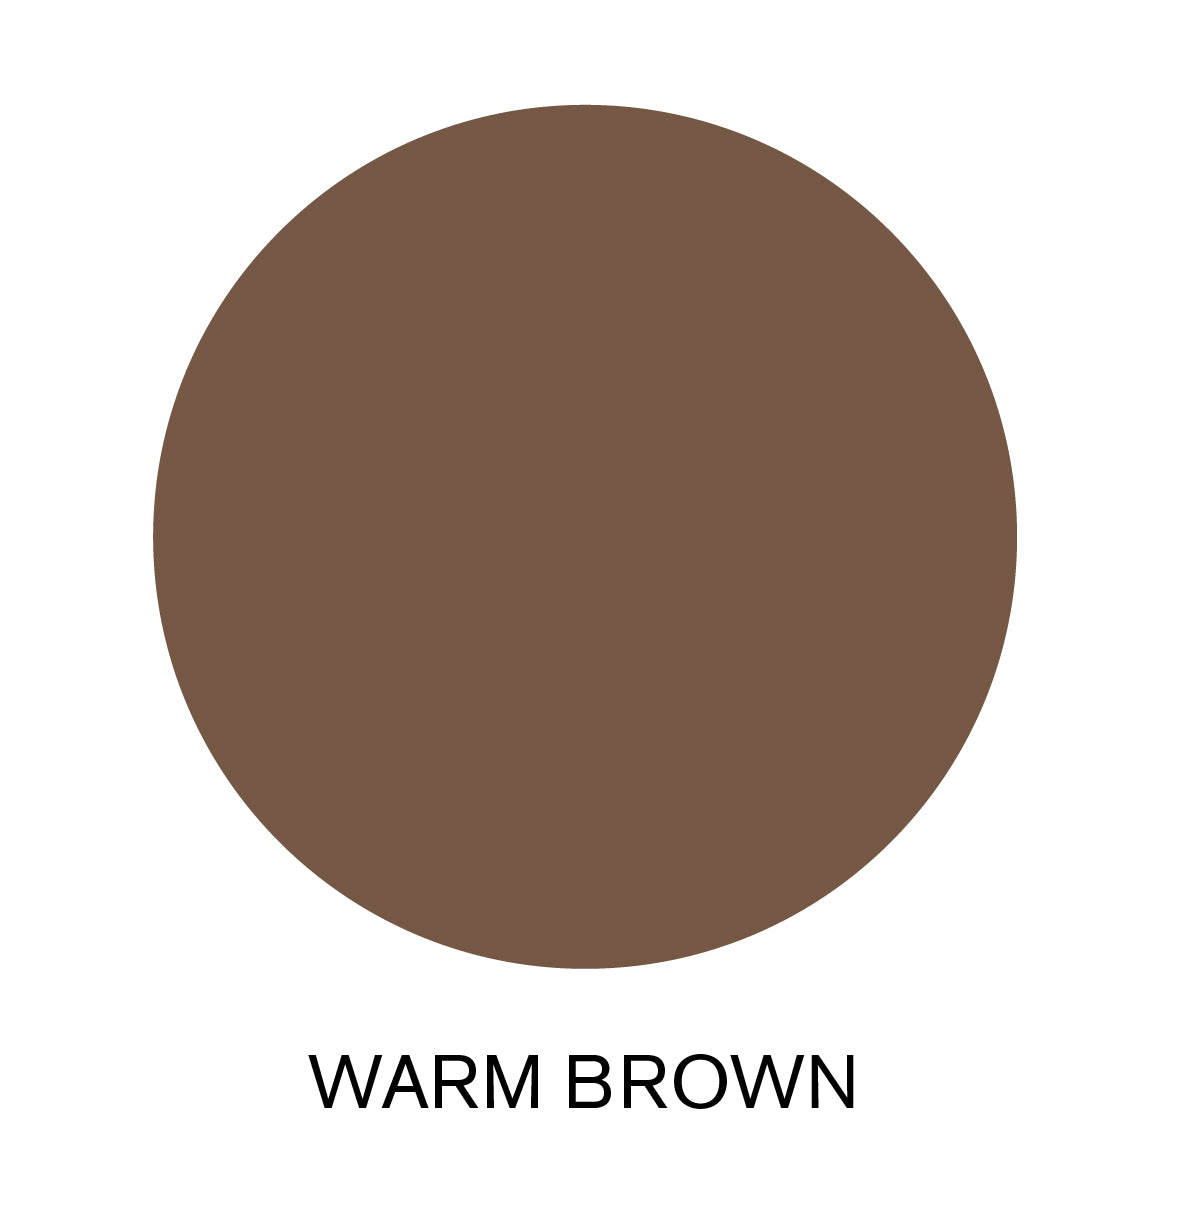 REVITALASH Hi-Def Brow Pencil - Warm Brown